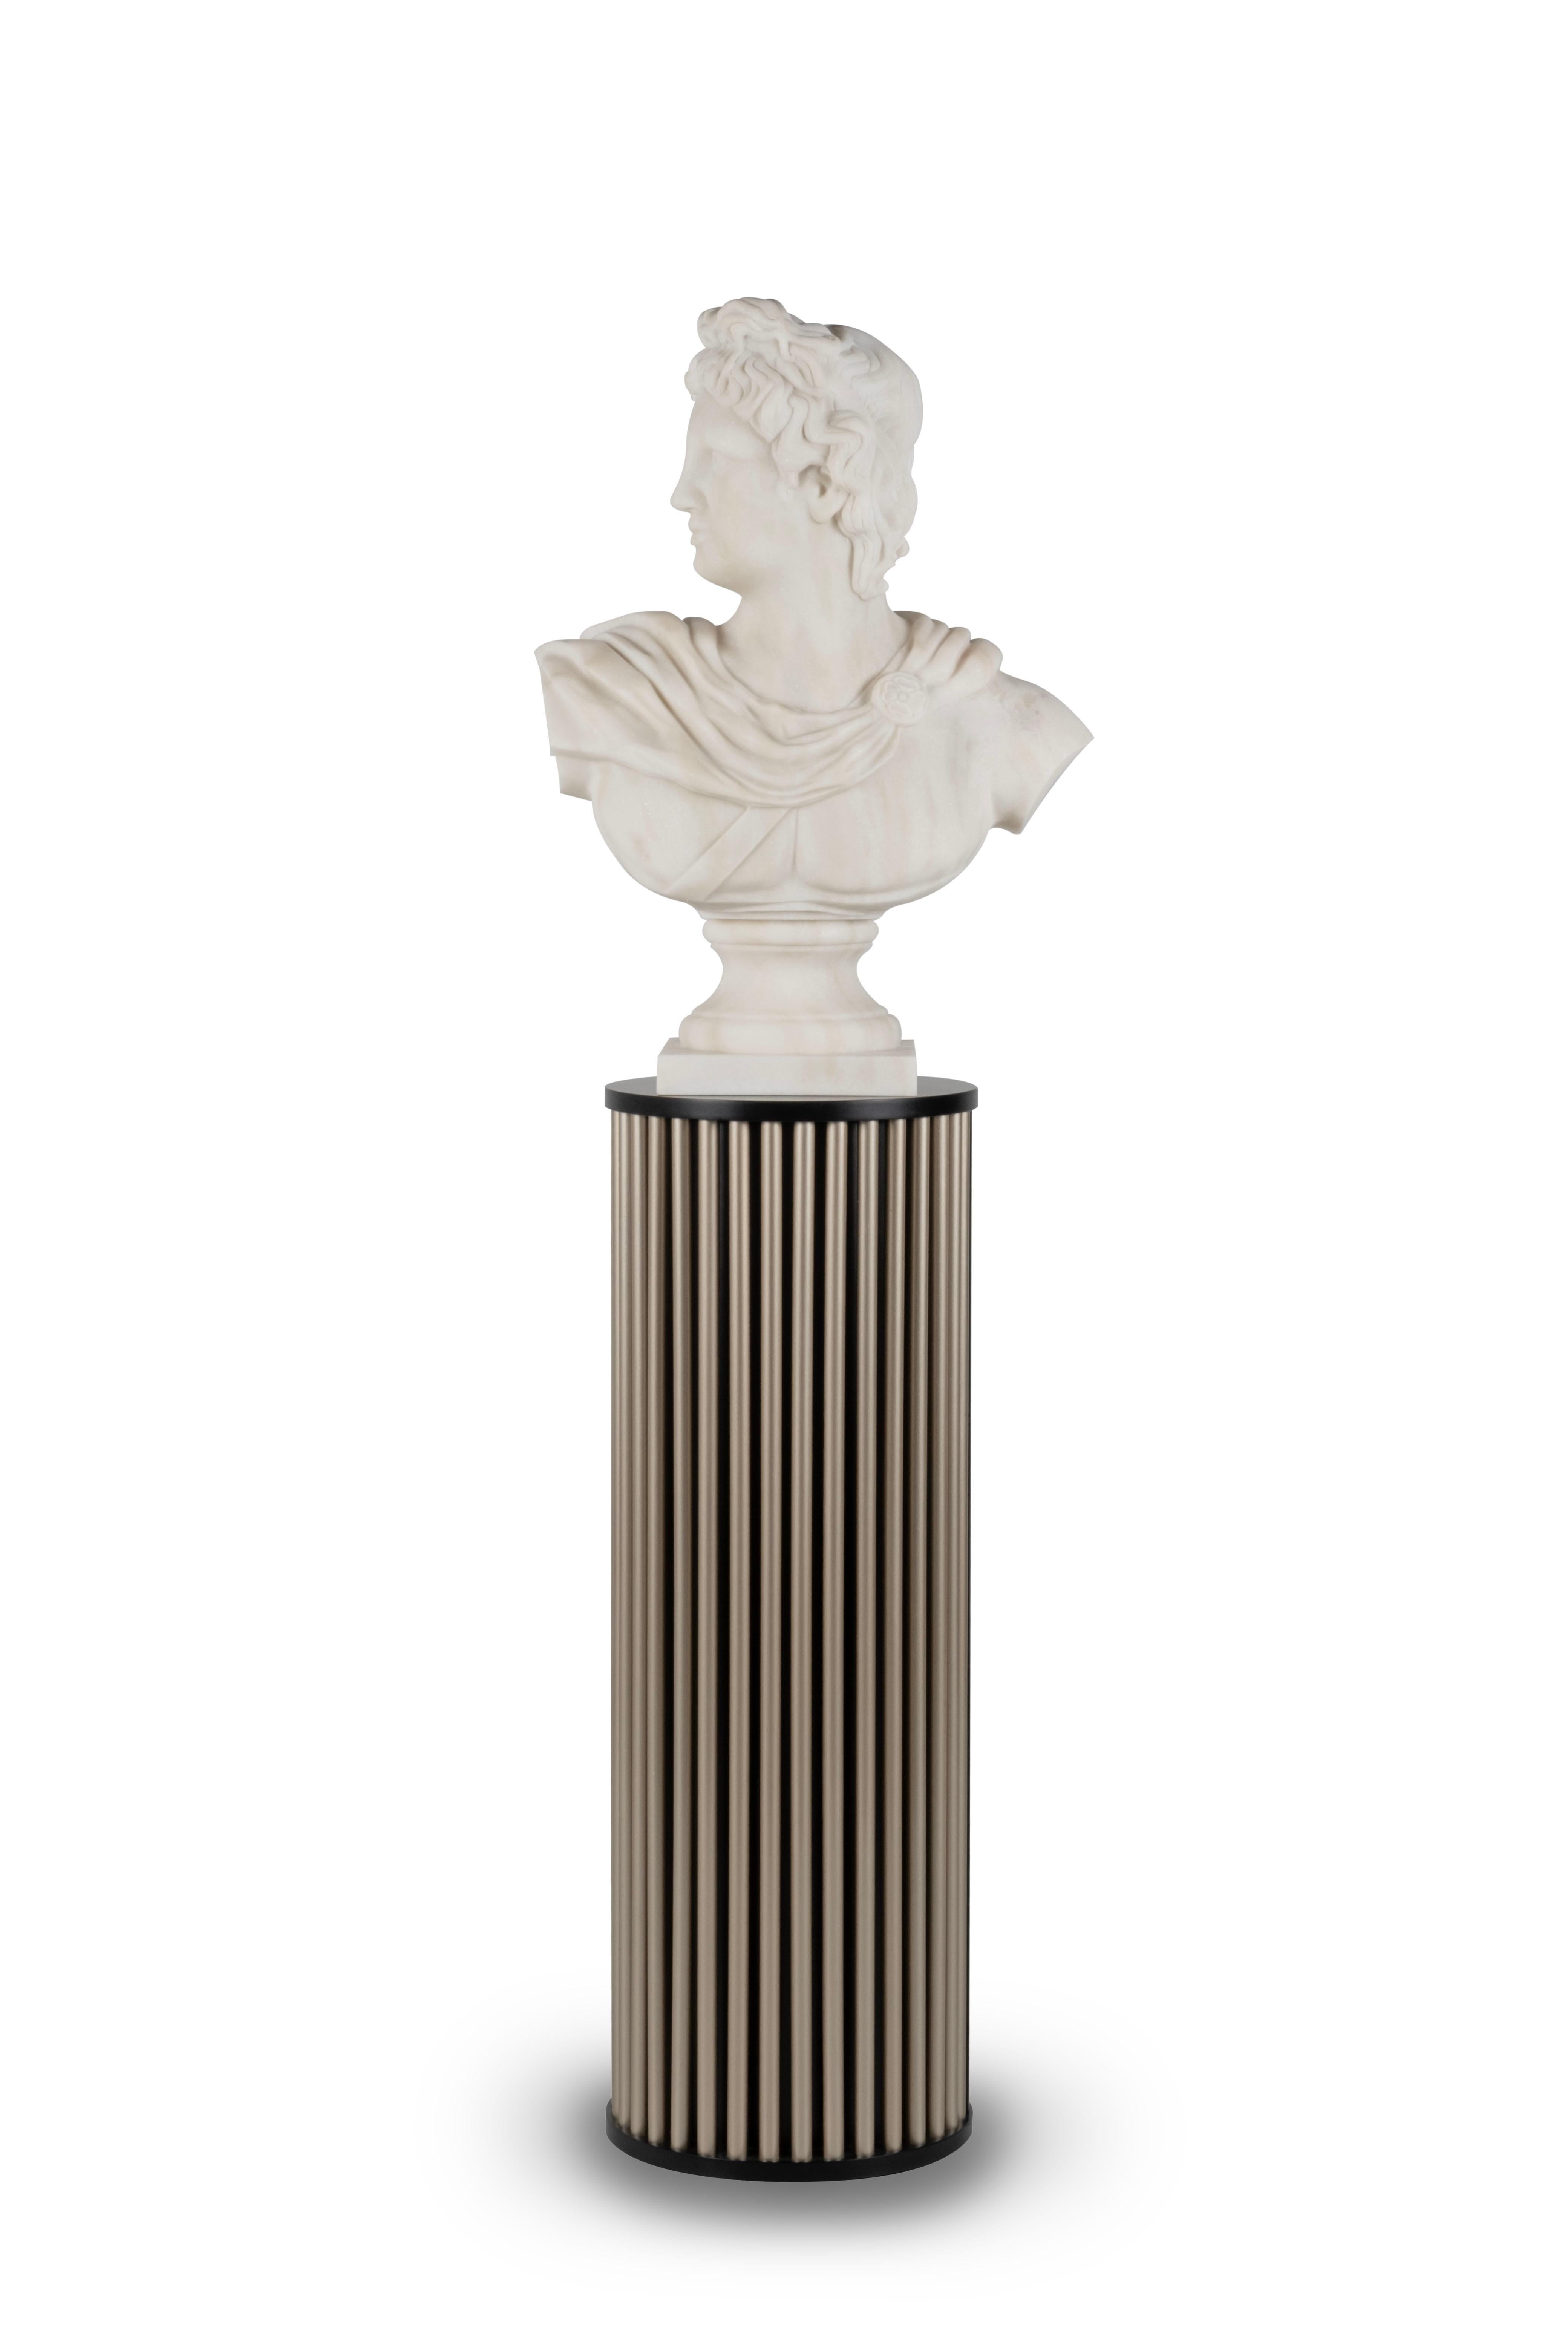 Apolo Büste, Calacatta Bianco Marmor, Modern Collection, Handgefertigt in Portugal - Europa von GF Modern.

Die Büste Apolo ist eine fesselnde Skulptur, die sorgfältig aus Calacatta Bianco-Marmor gefertigt wurde. Als eine der wichtigsten Gestalten